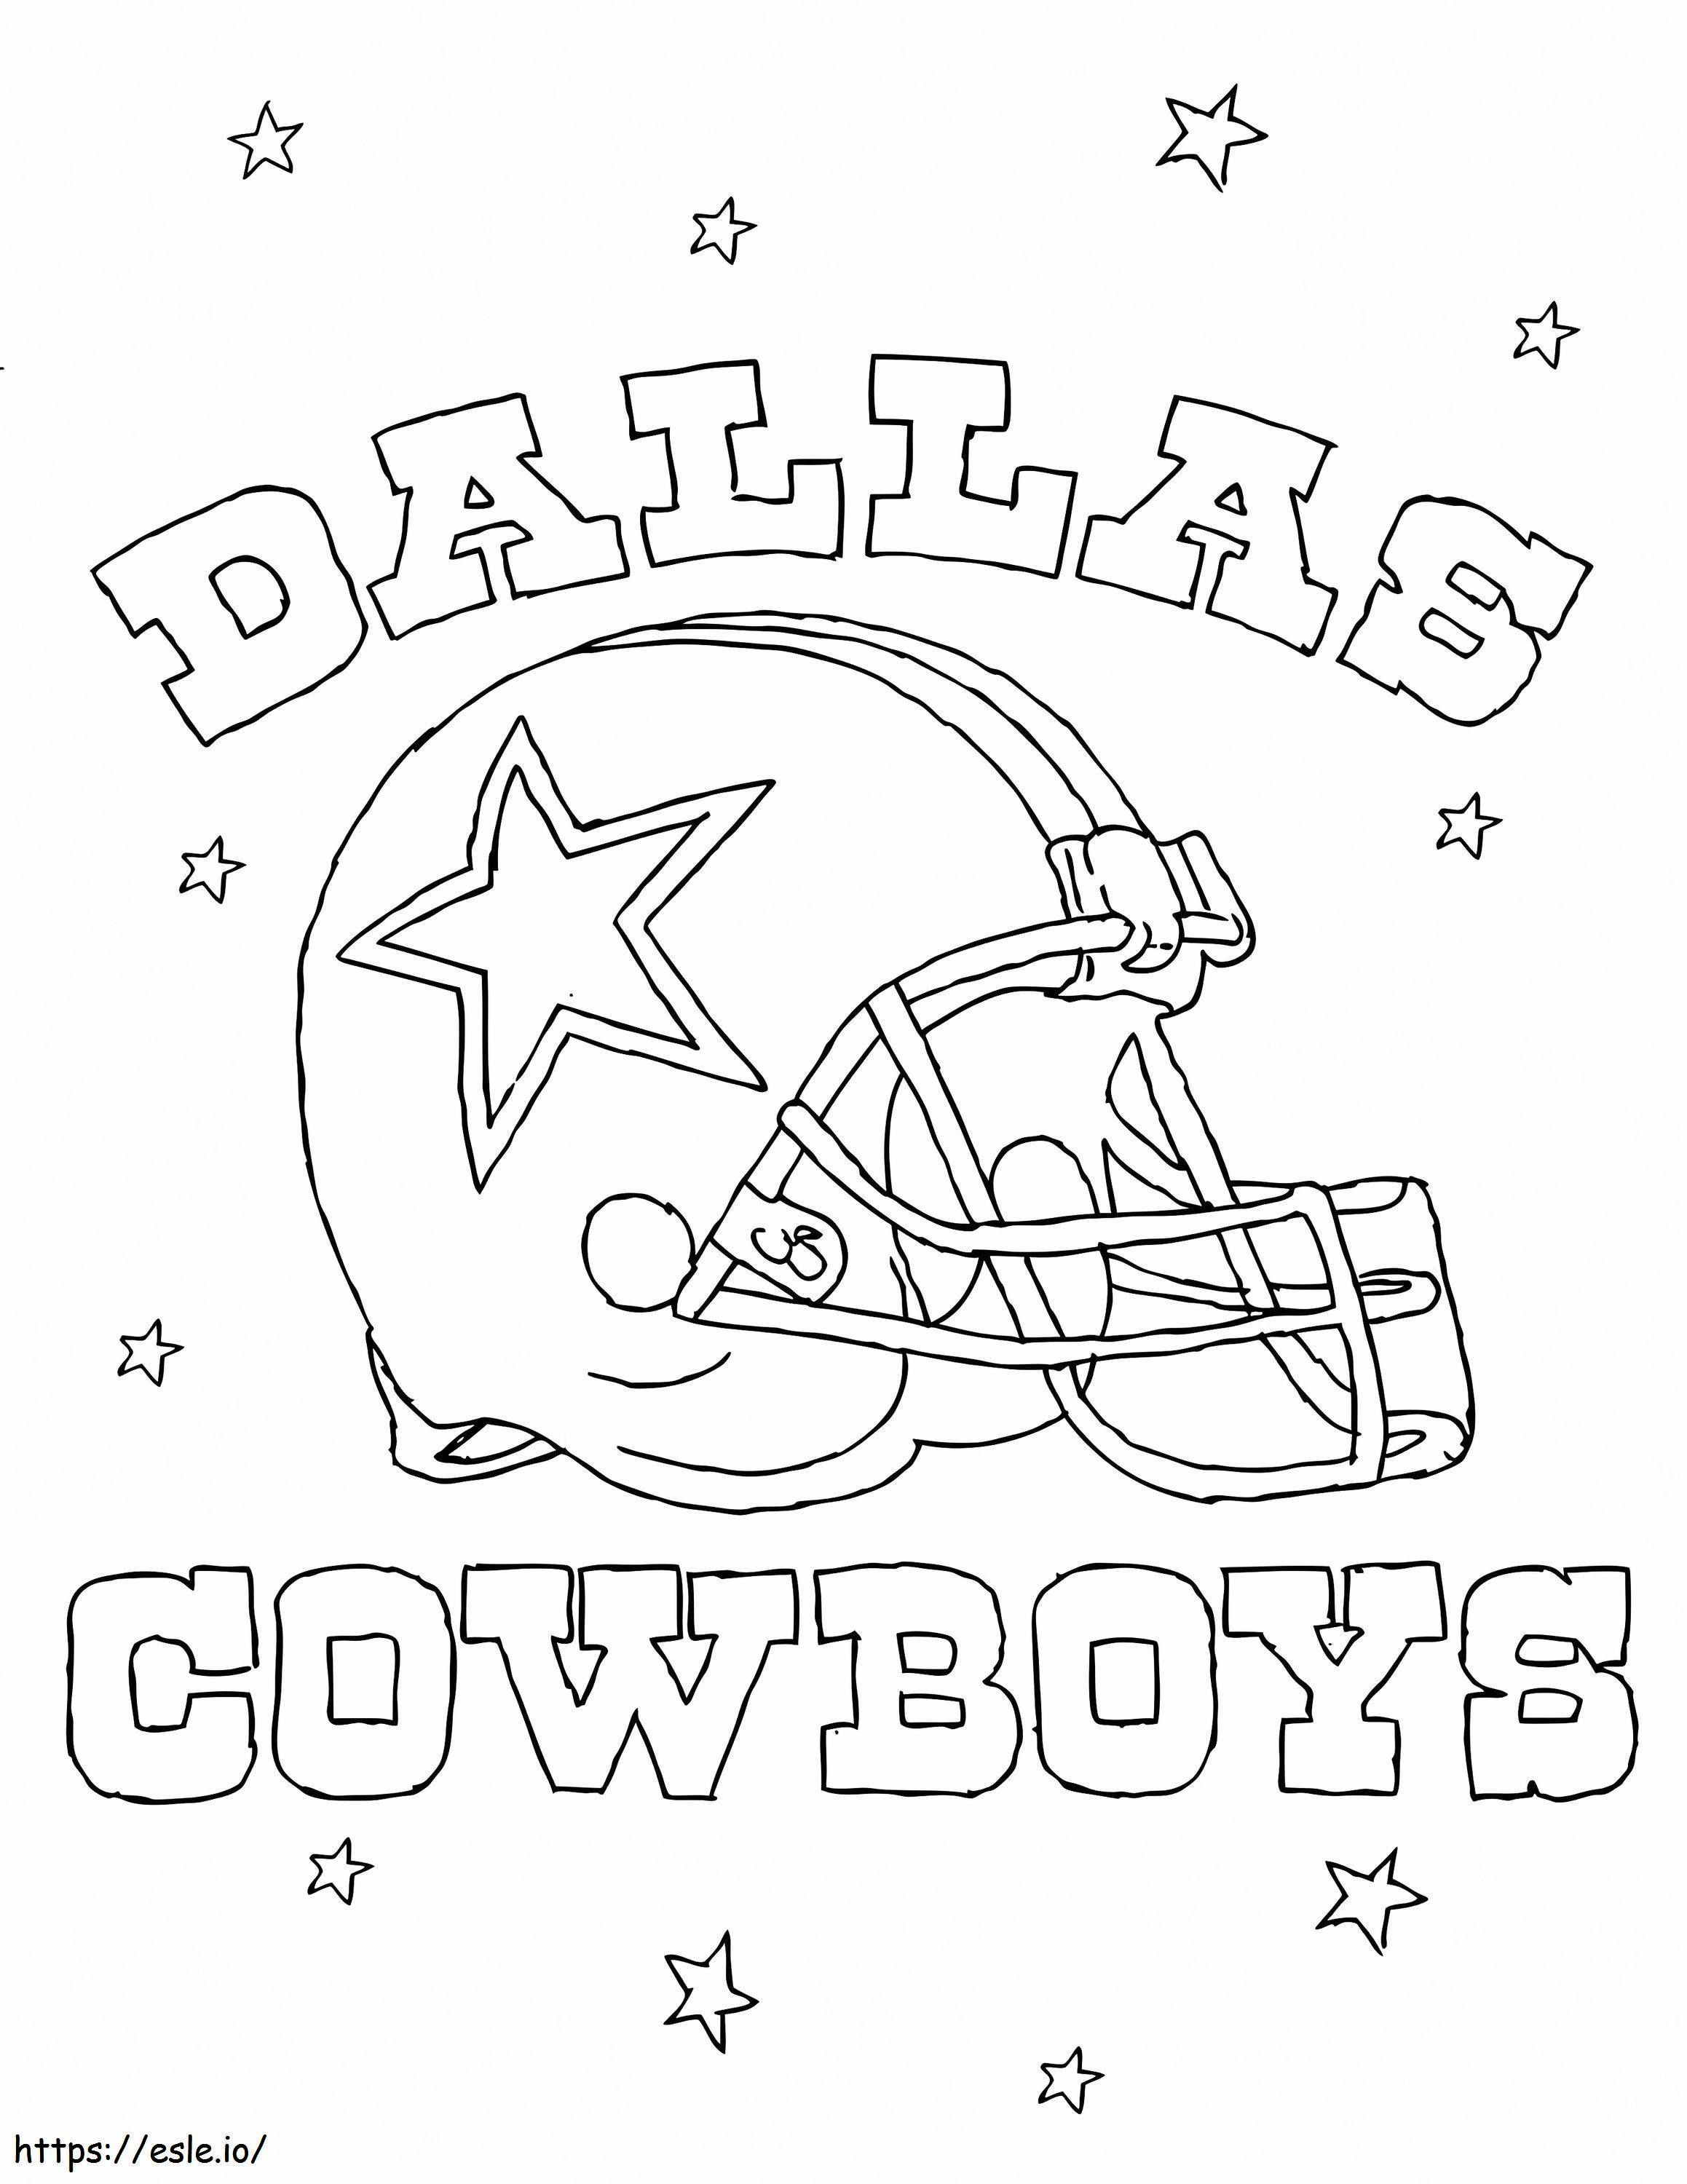 Dallas Cowboys coloring page